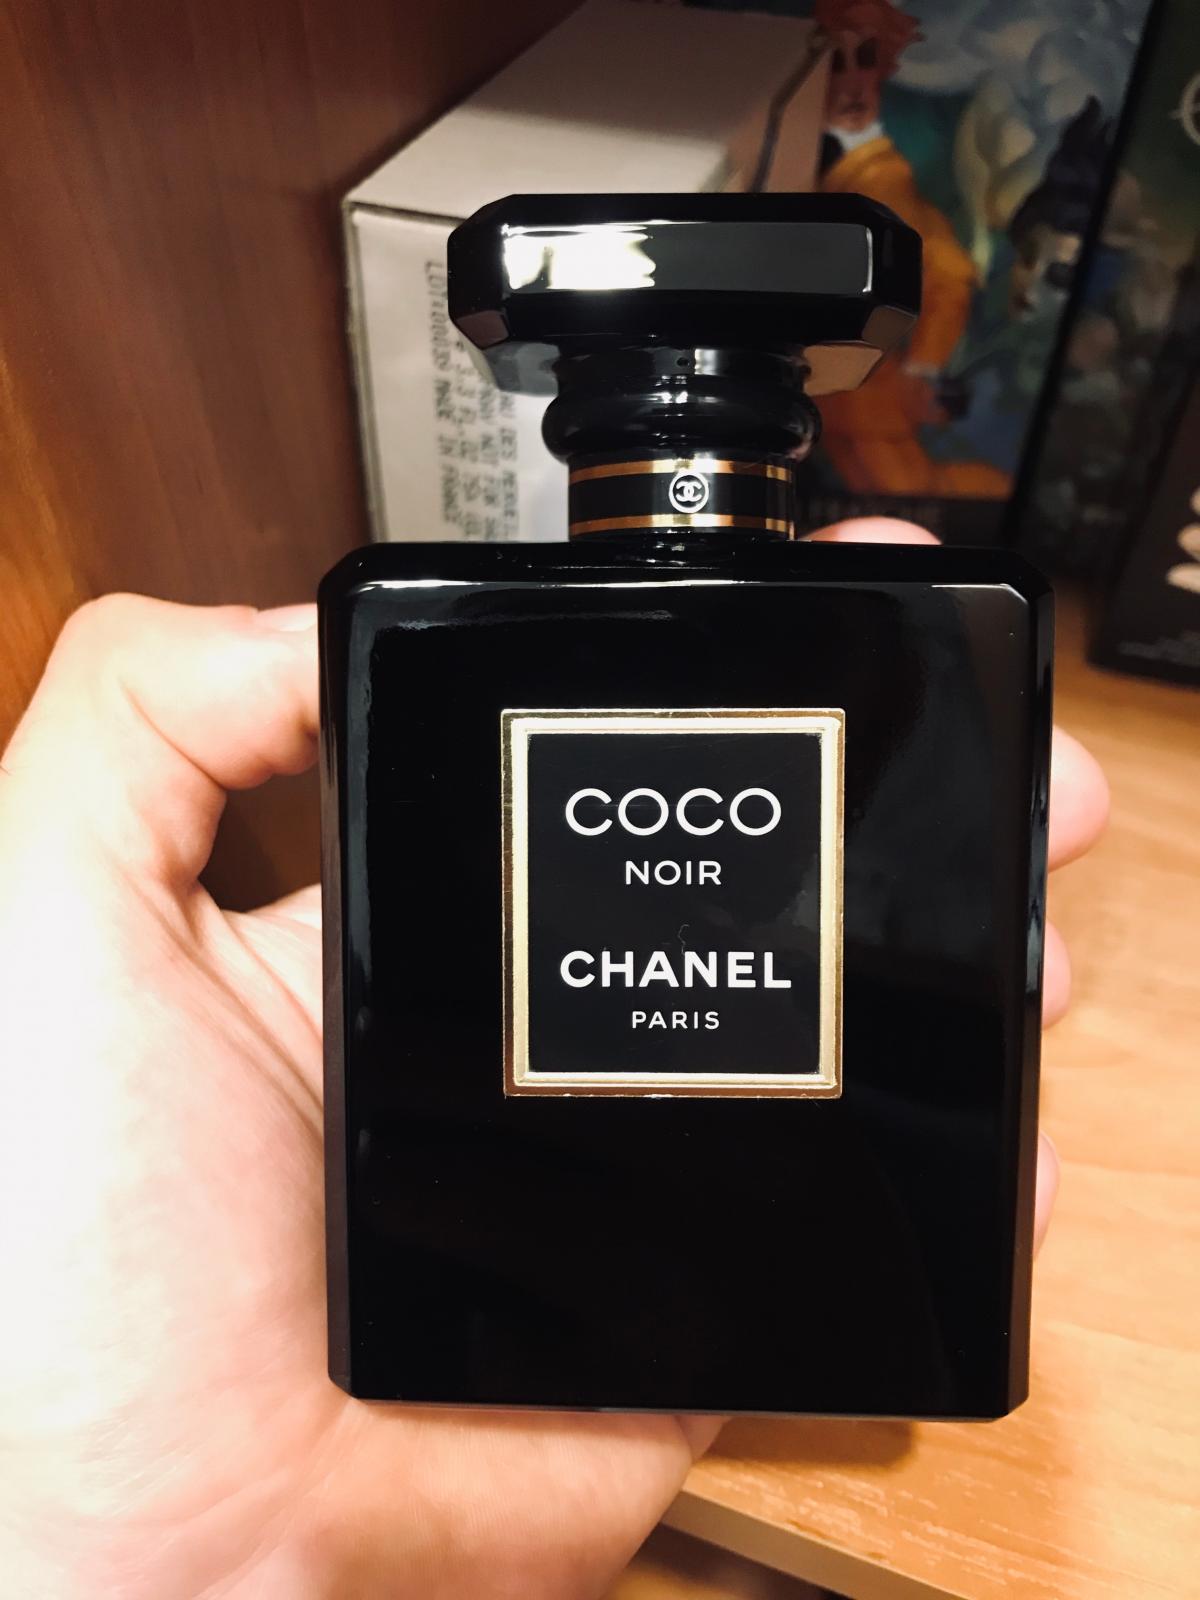 Coco Noir Chanel άρωμα - ένα άρωμα για γυναίκες 2012